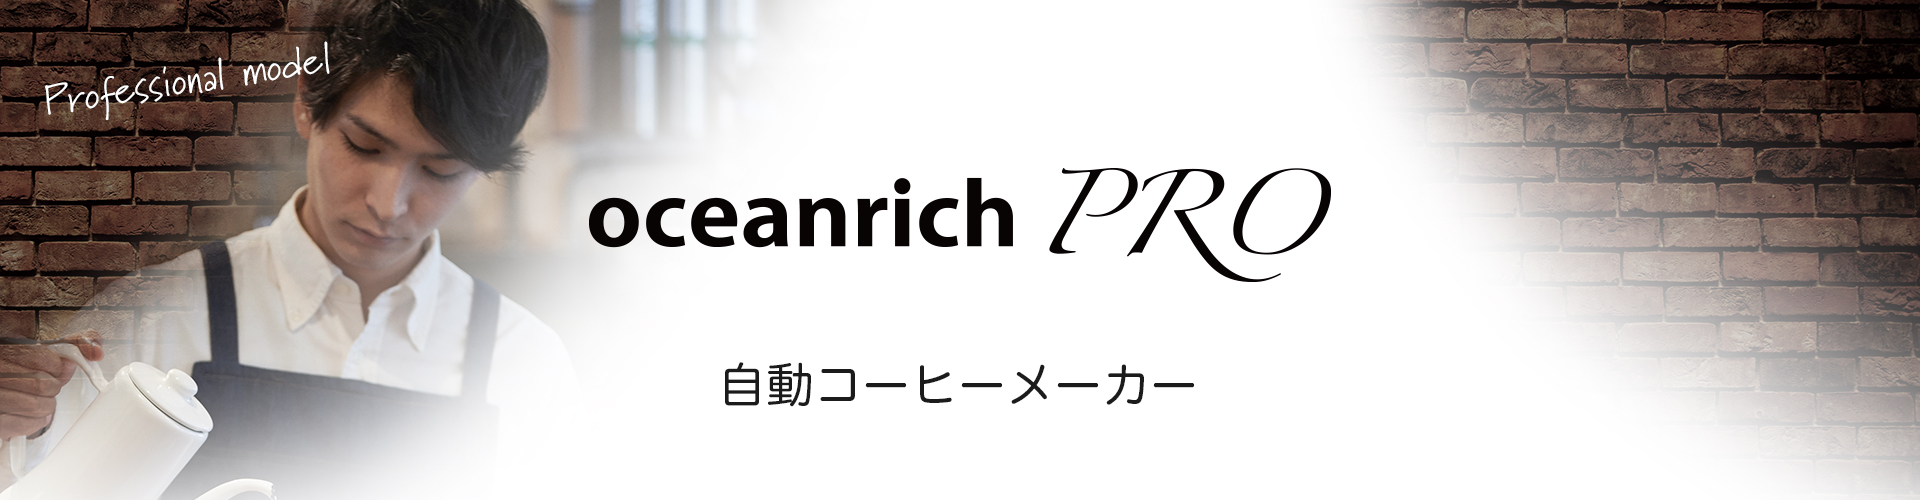 oceanrich PRO